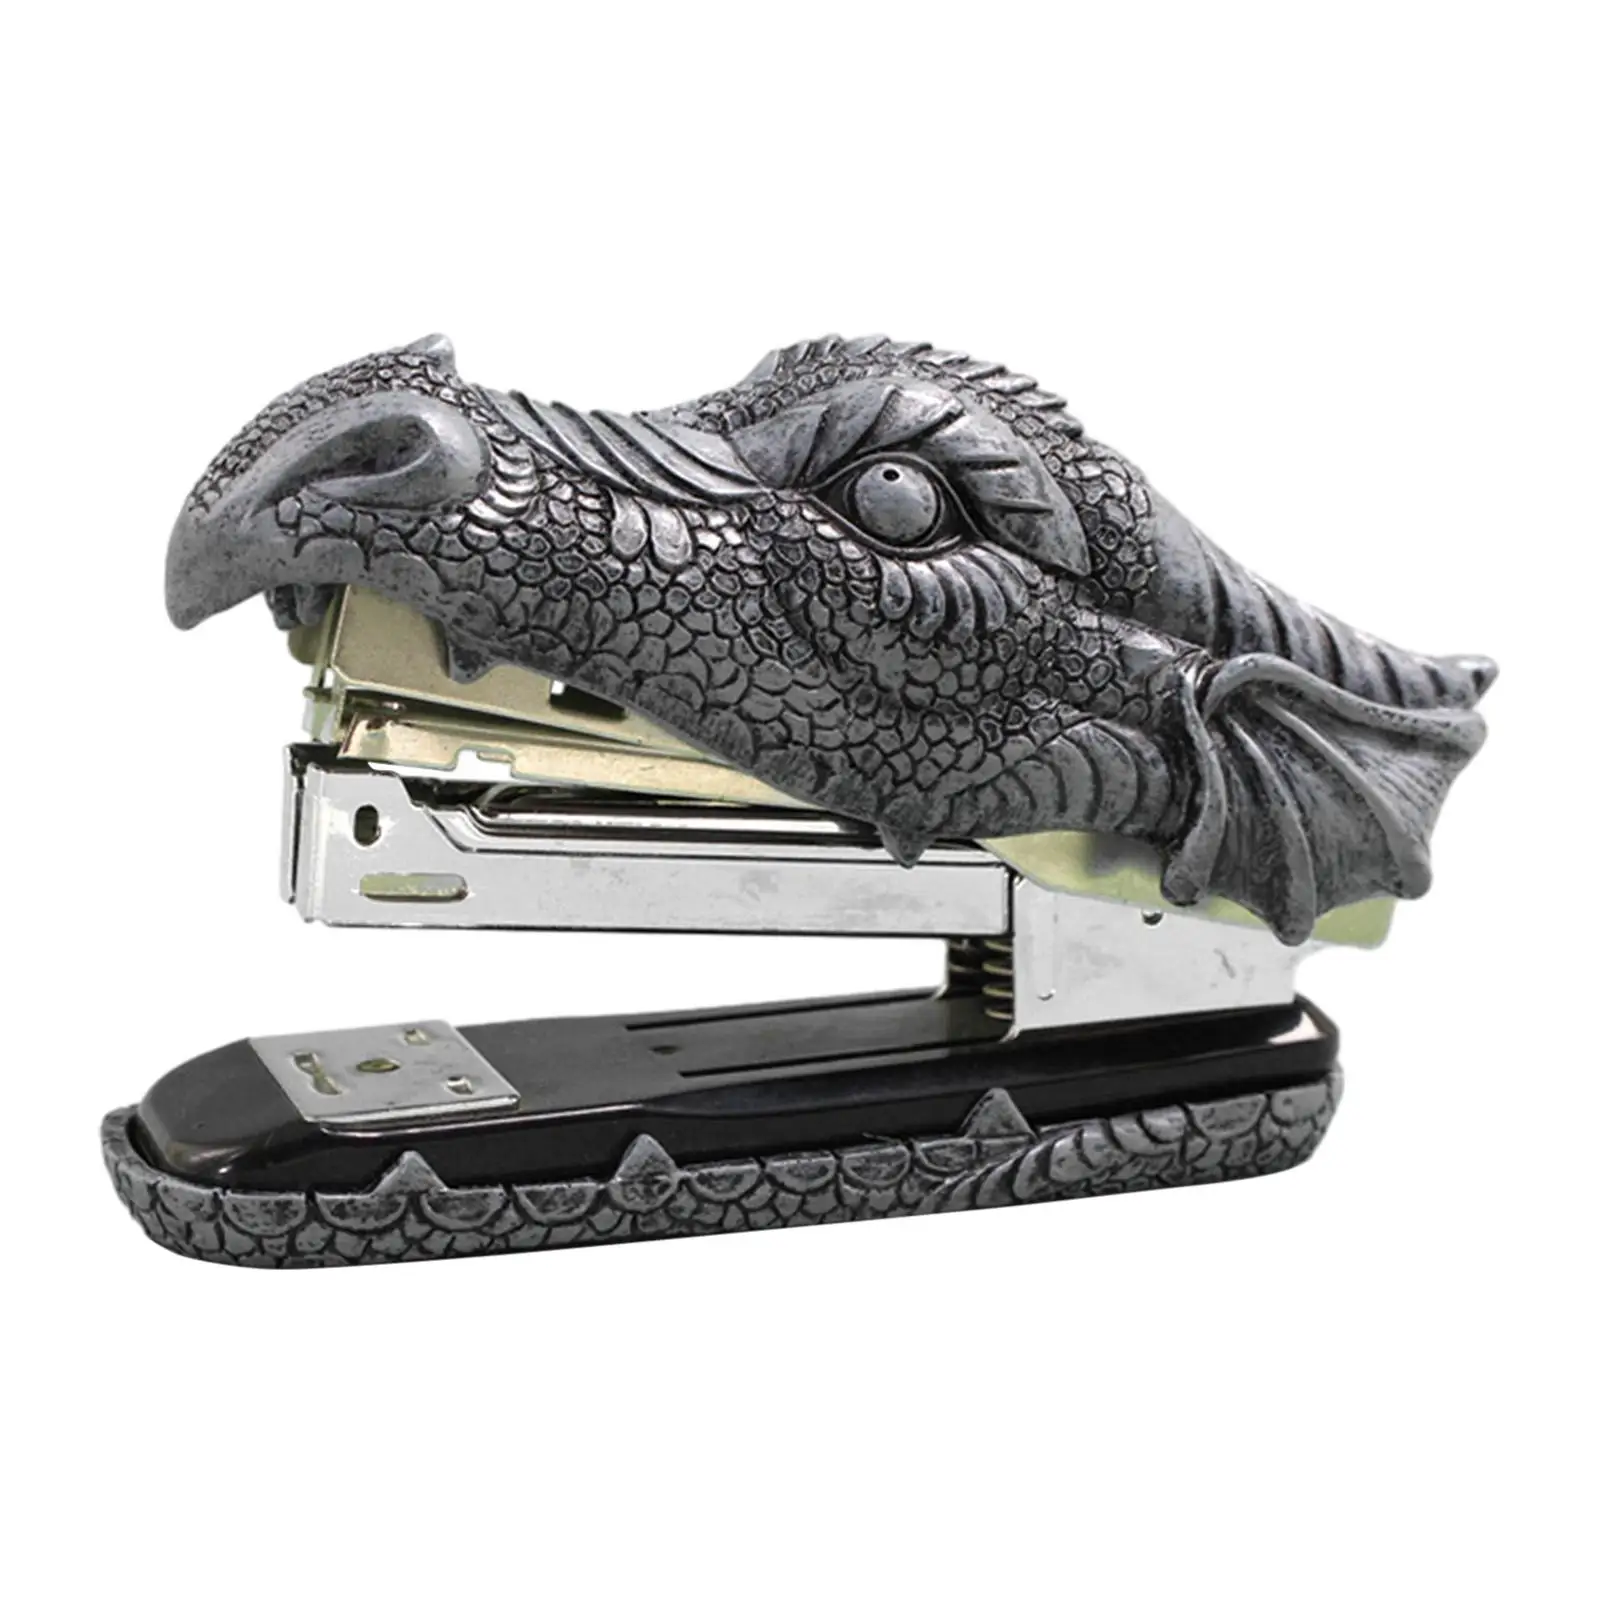 Dragon Head Stapler, Metal Stapler, Resin Carving Durable Functional Home Decor Novelty Stapler, Unique Small Stapler